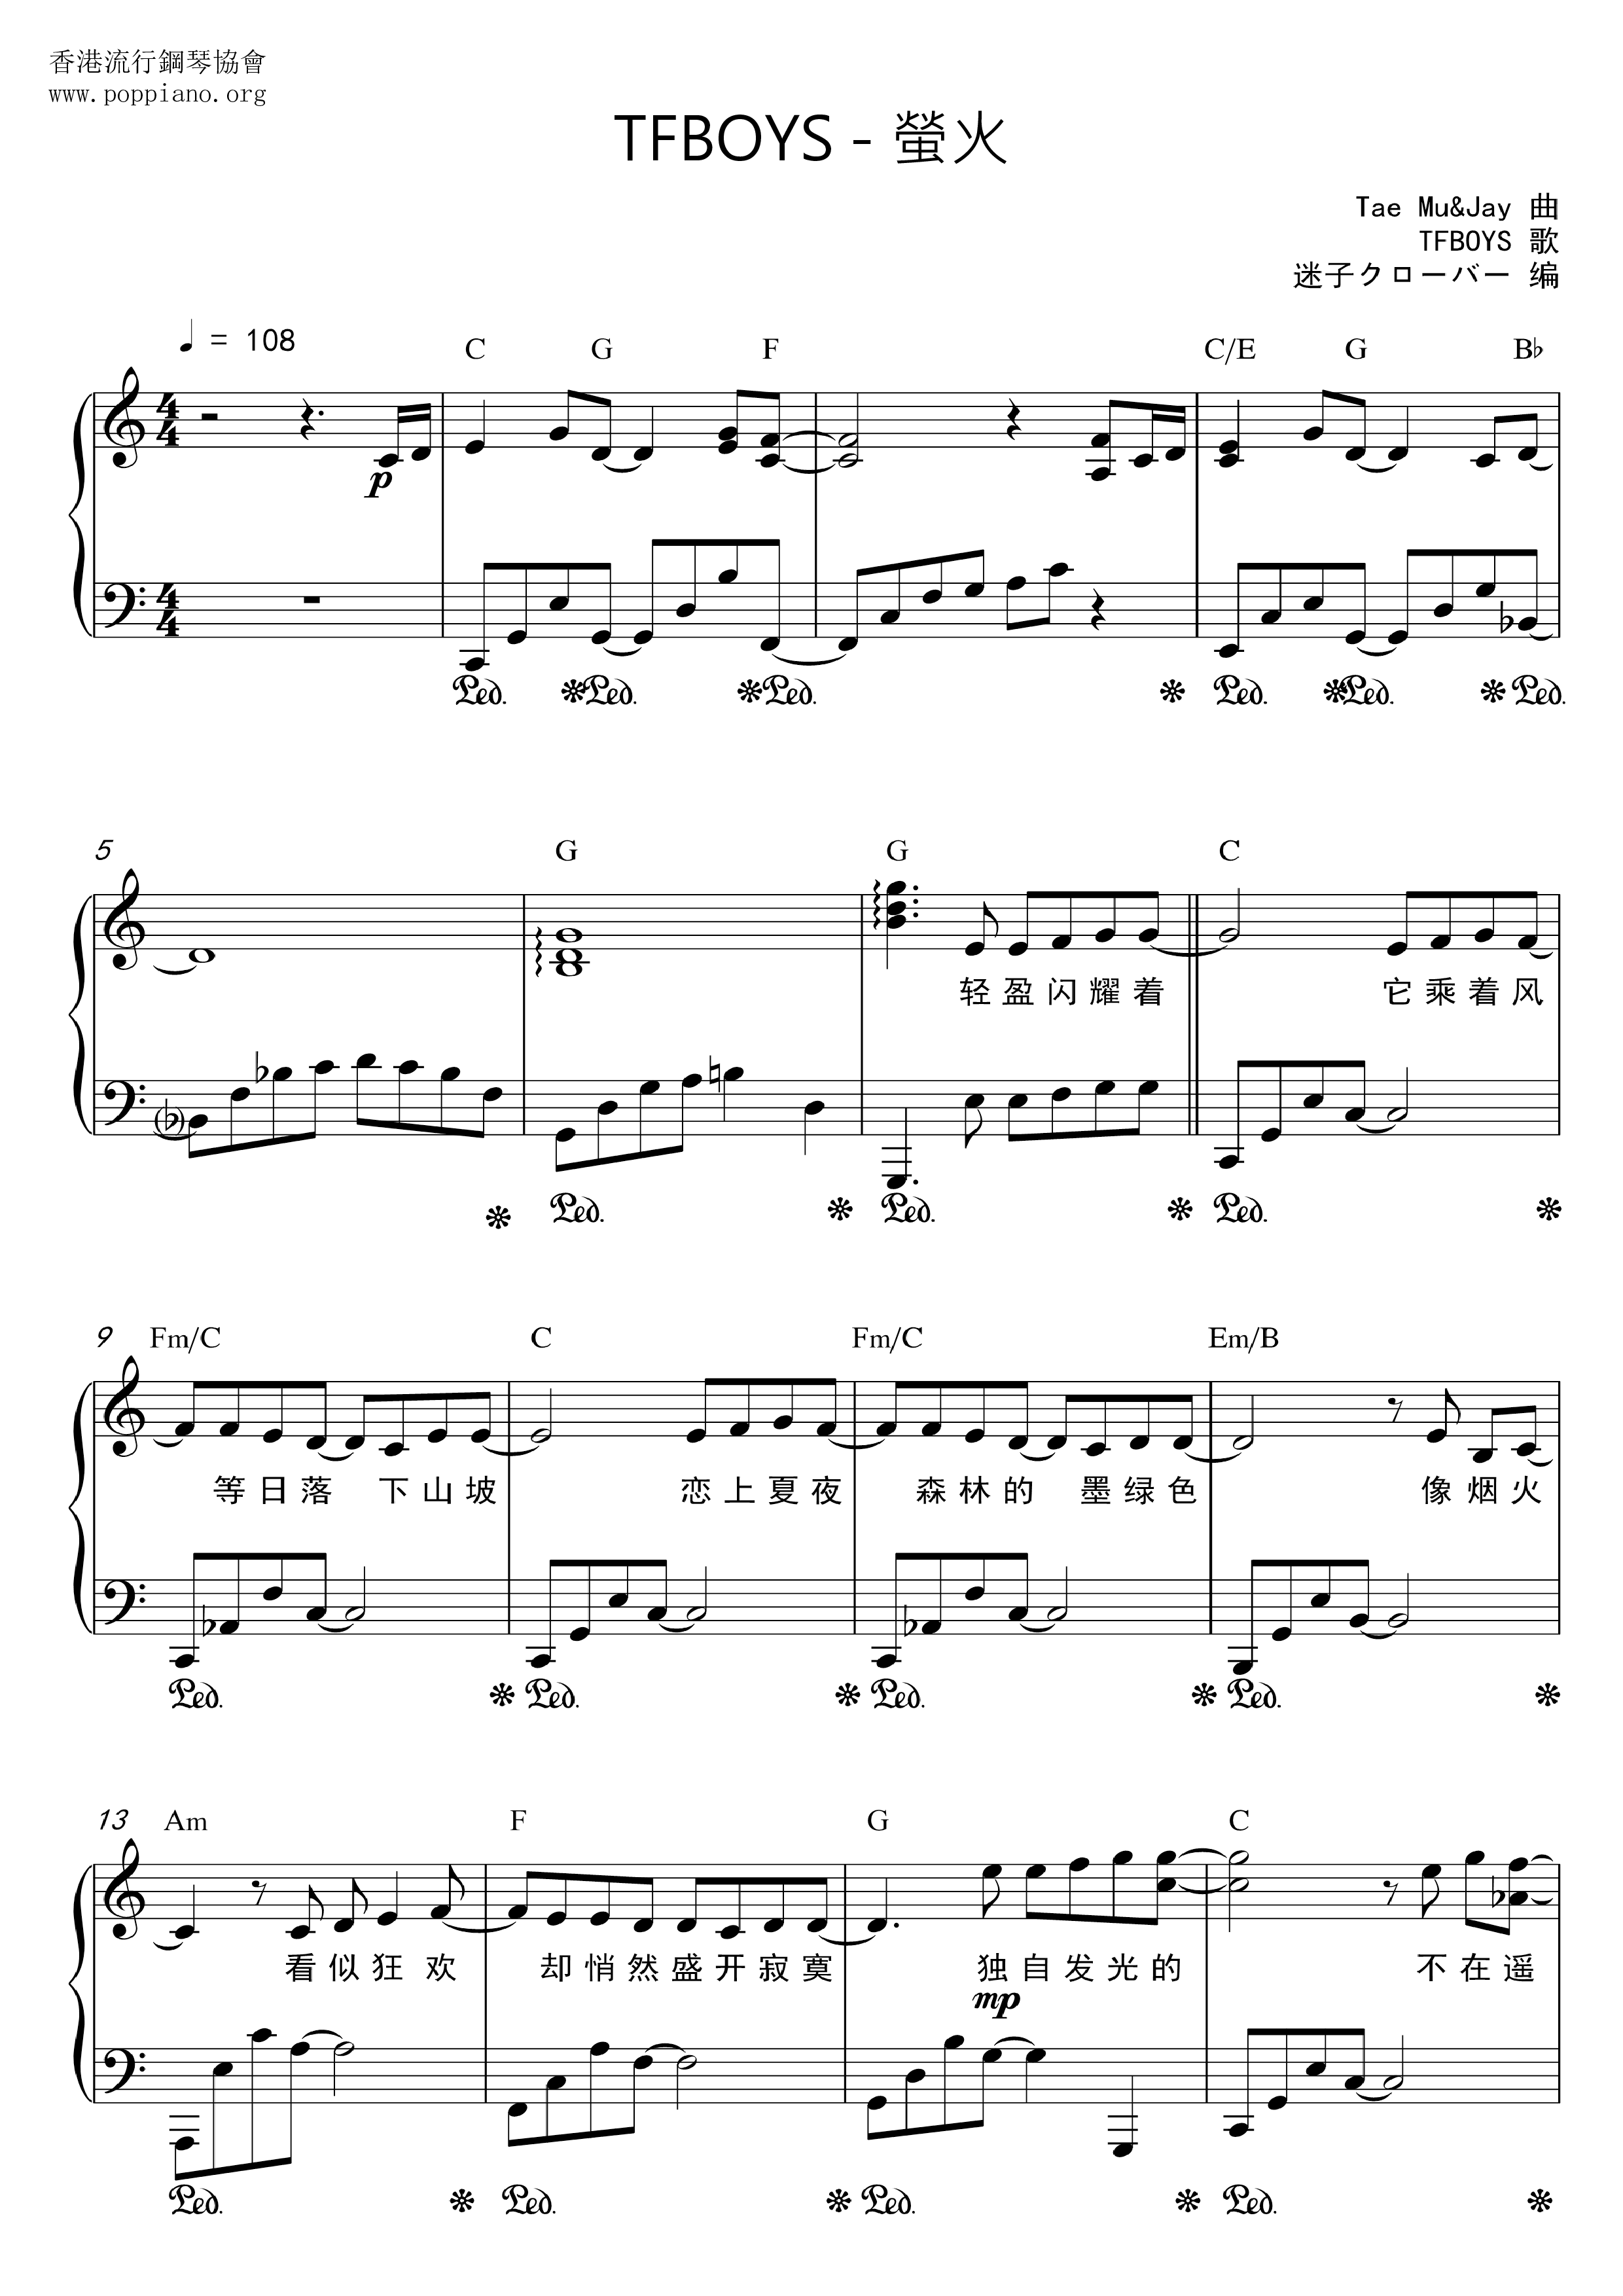 Firefly Score